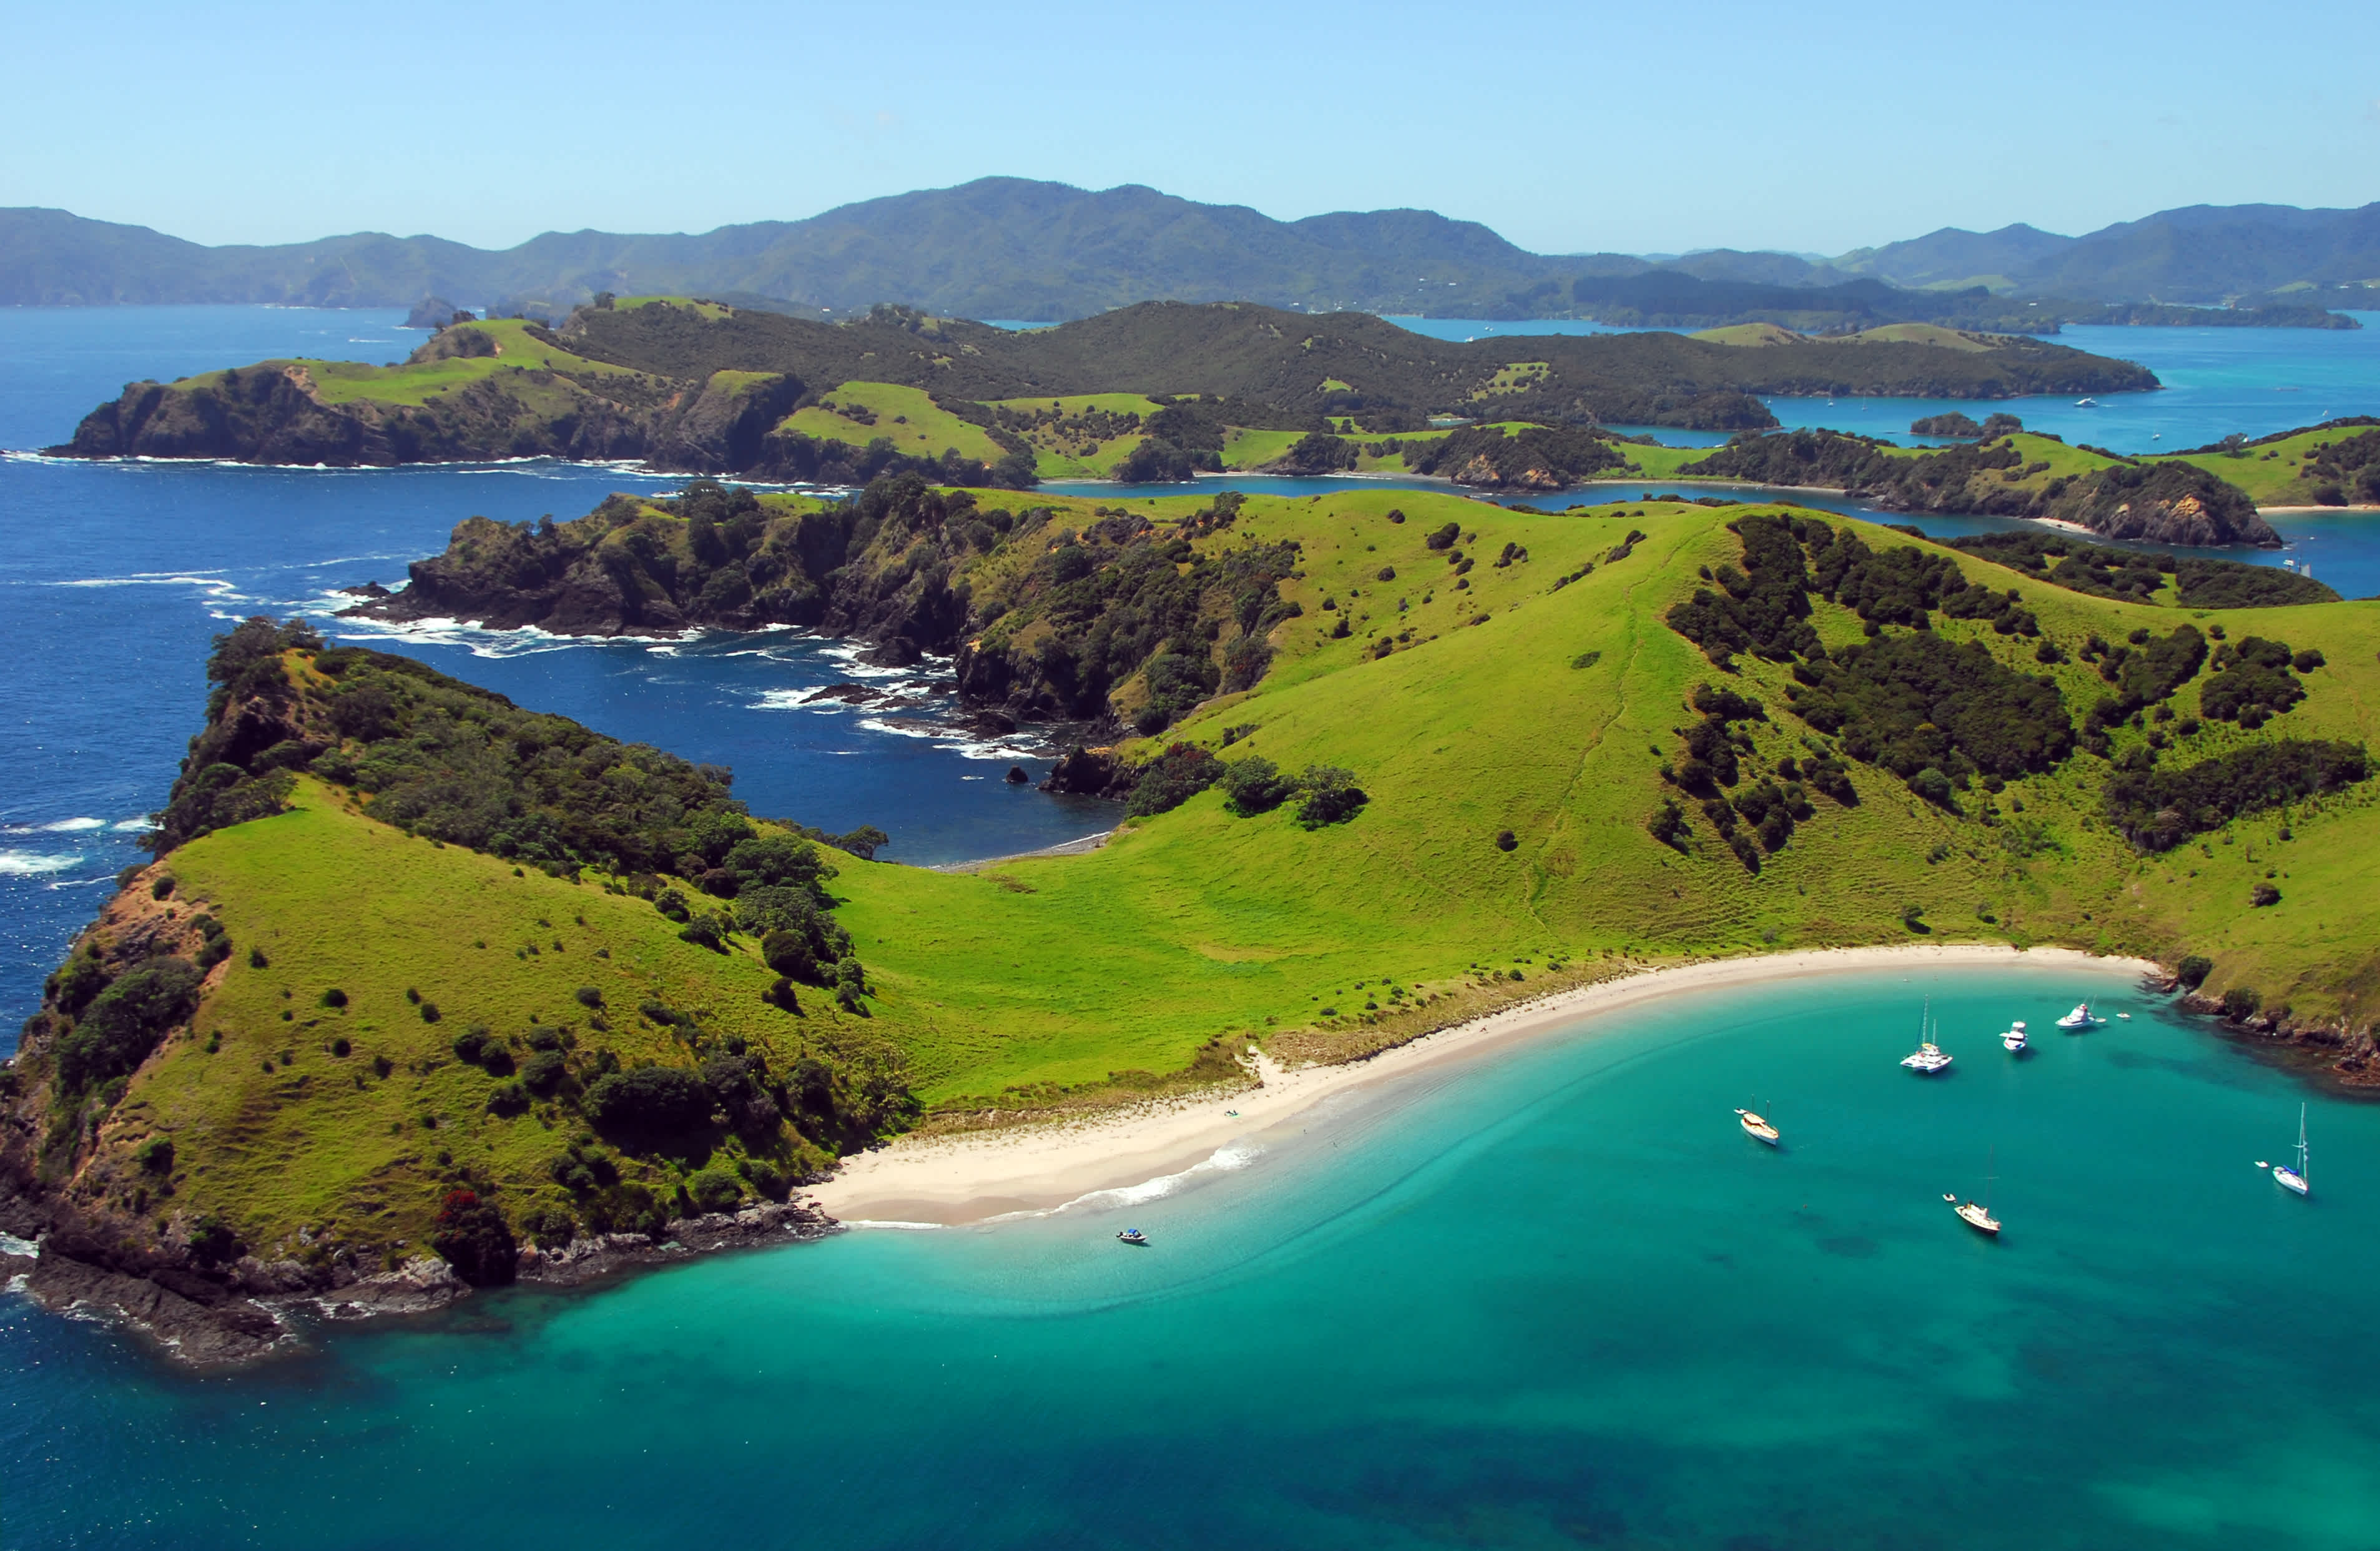 Uitzicht op de schilderachtige baai tijdens een vakantie in de Bay of Islands in Nieuw-Zeeland